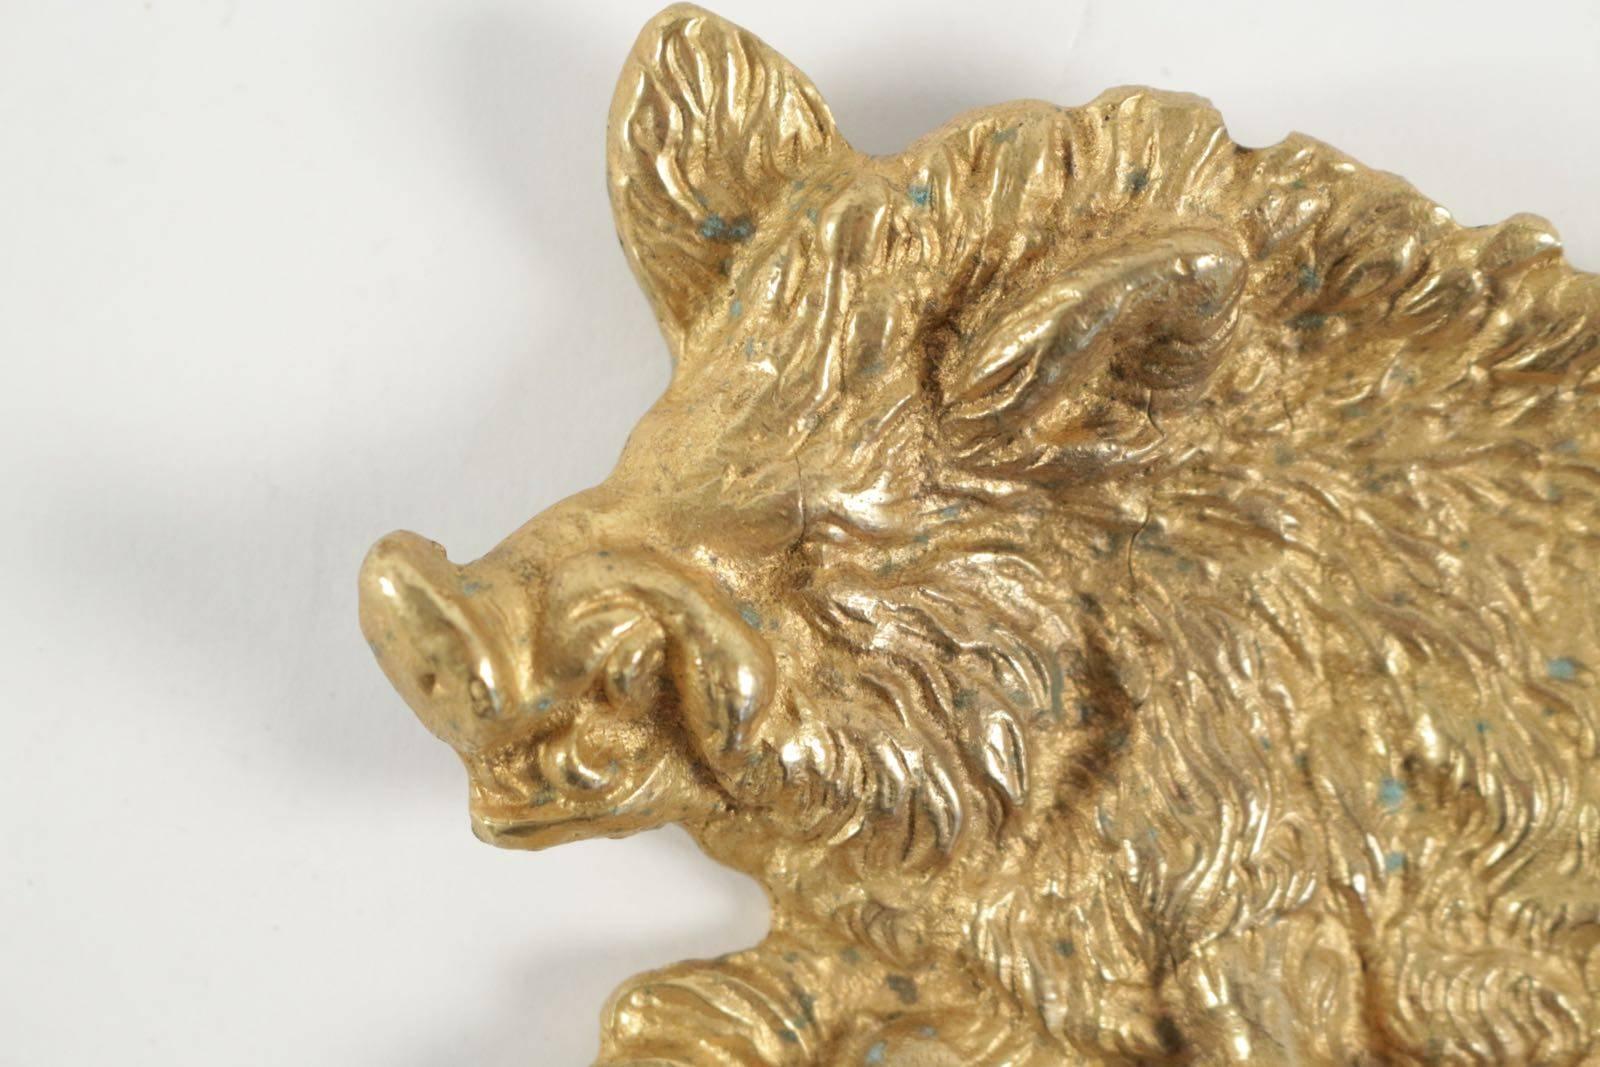 Beaux Arts Vide Poche in Gold Gilt Representing a Wild Boar